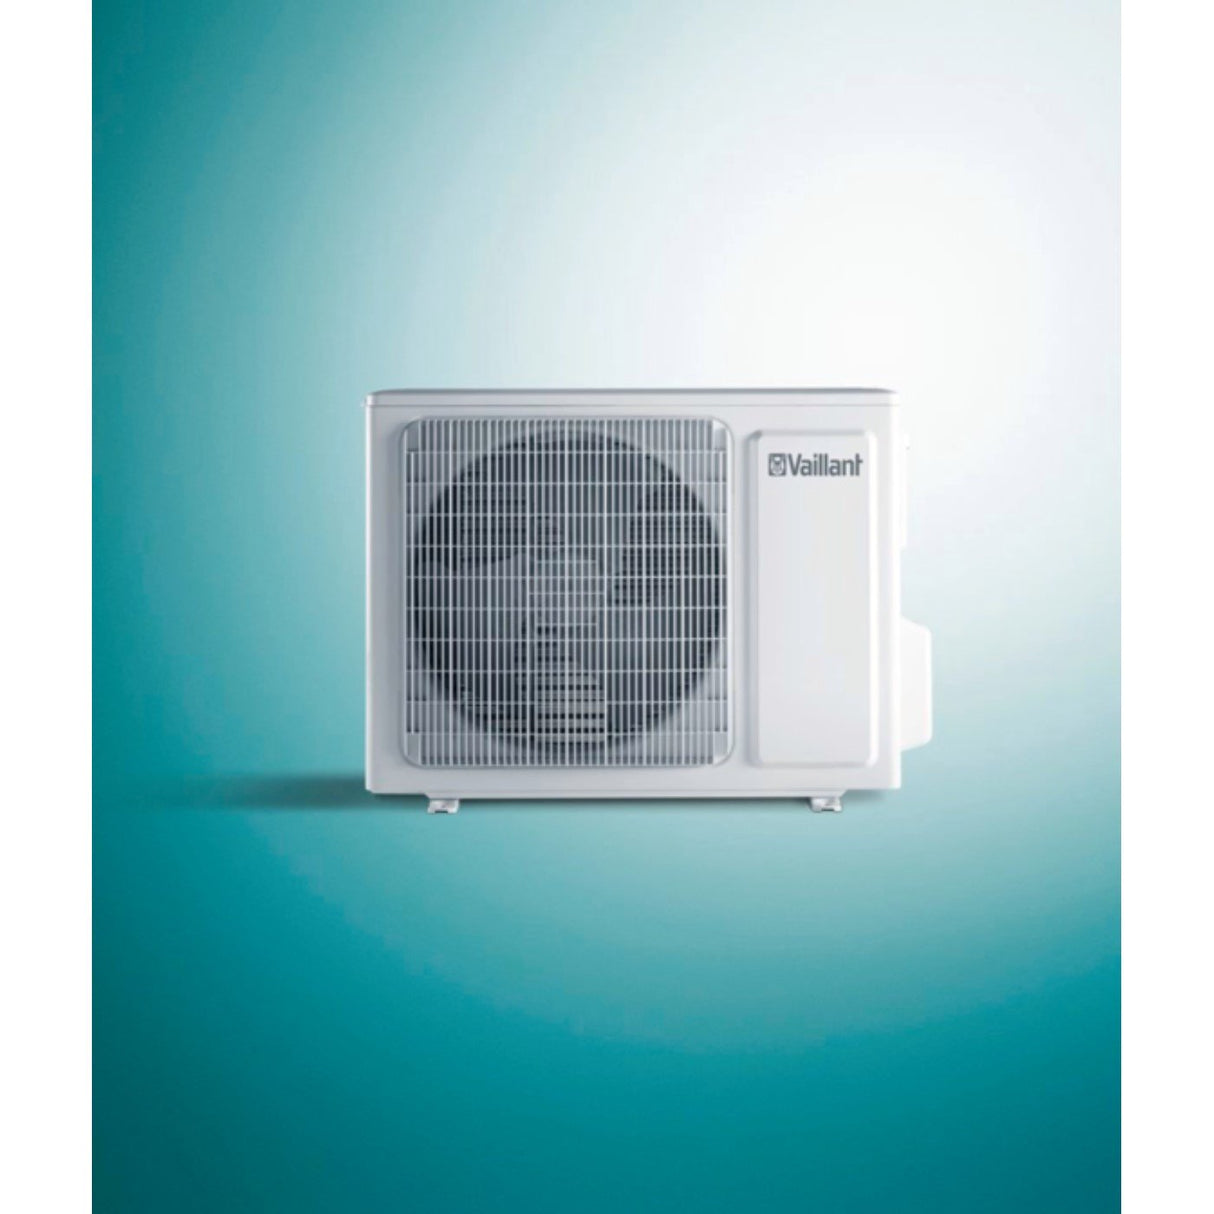 immagine-5-vaillant-climatizzatore-condizionatore-vaillant-inverter-climavair-vai-8-plus-18000-btu-vai-8-050wn-r-32-classe-a